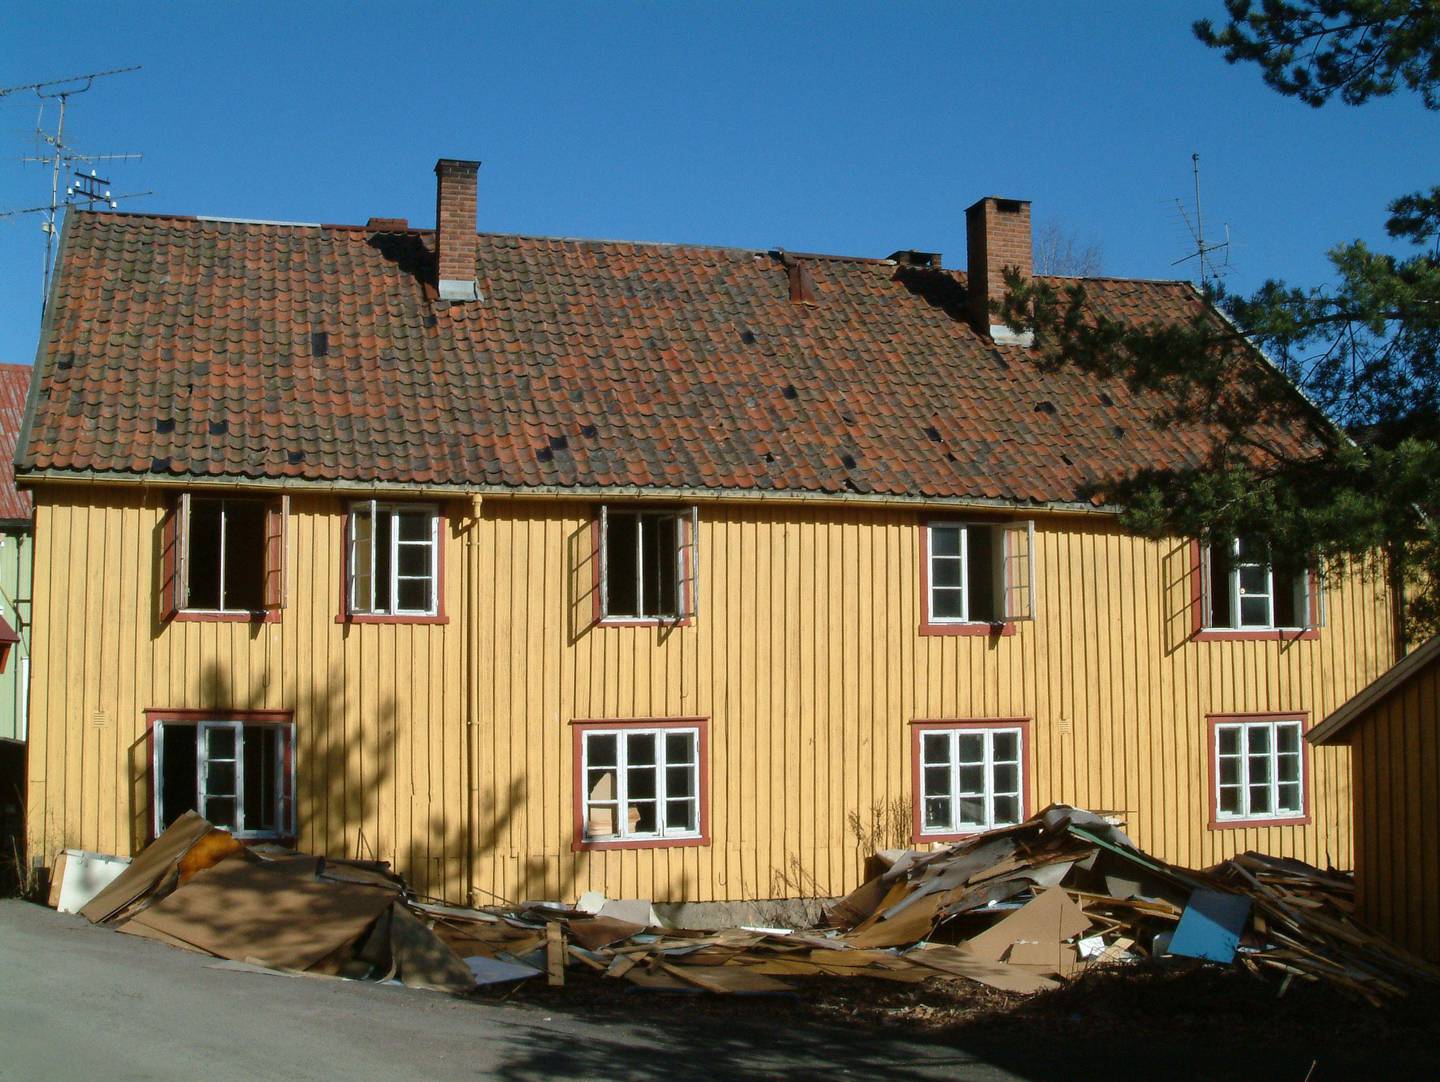 RIMELIG: Marie Olaussen fikk kjøpt det gamle fattighuset i Holmestrand for 1 krone. Mange ville beskrevet det som ei rønne. Foto: Privat